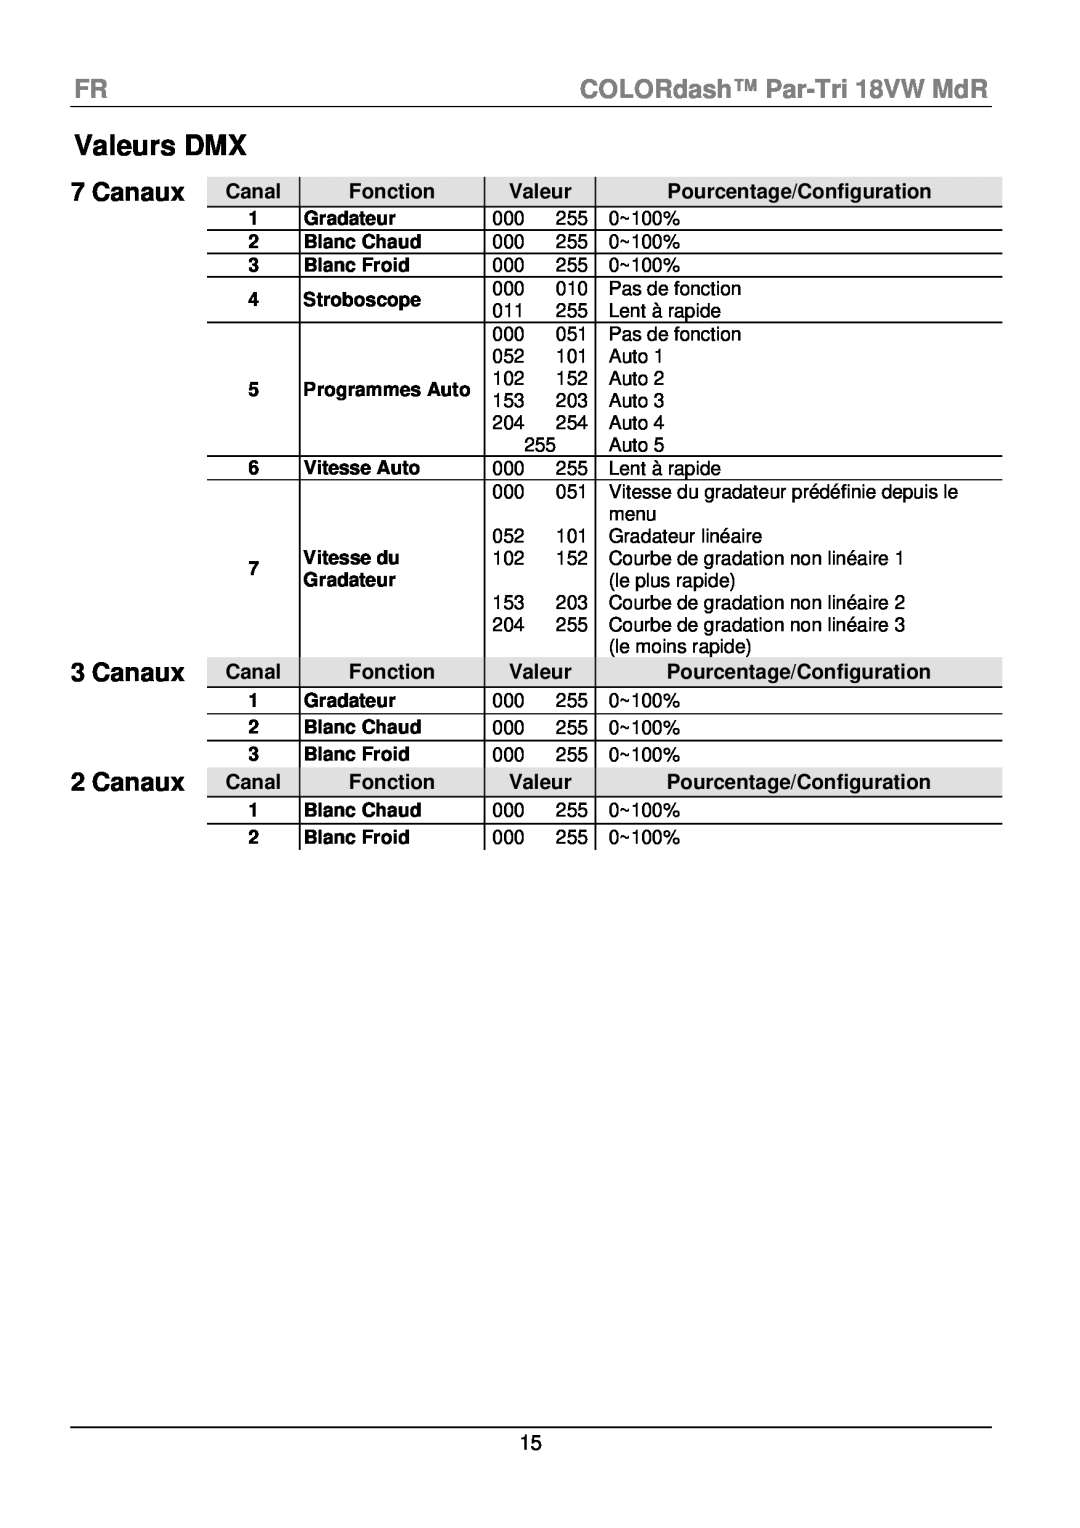 Chauvet manual Valeurs DMX, FRCOLORdash Par-Tri 18VW MdR, Canaux, Fonction, Pourcentage/Configuration 